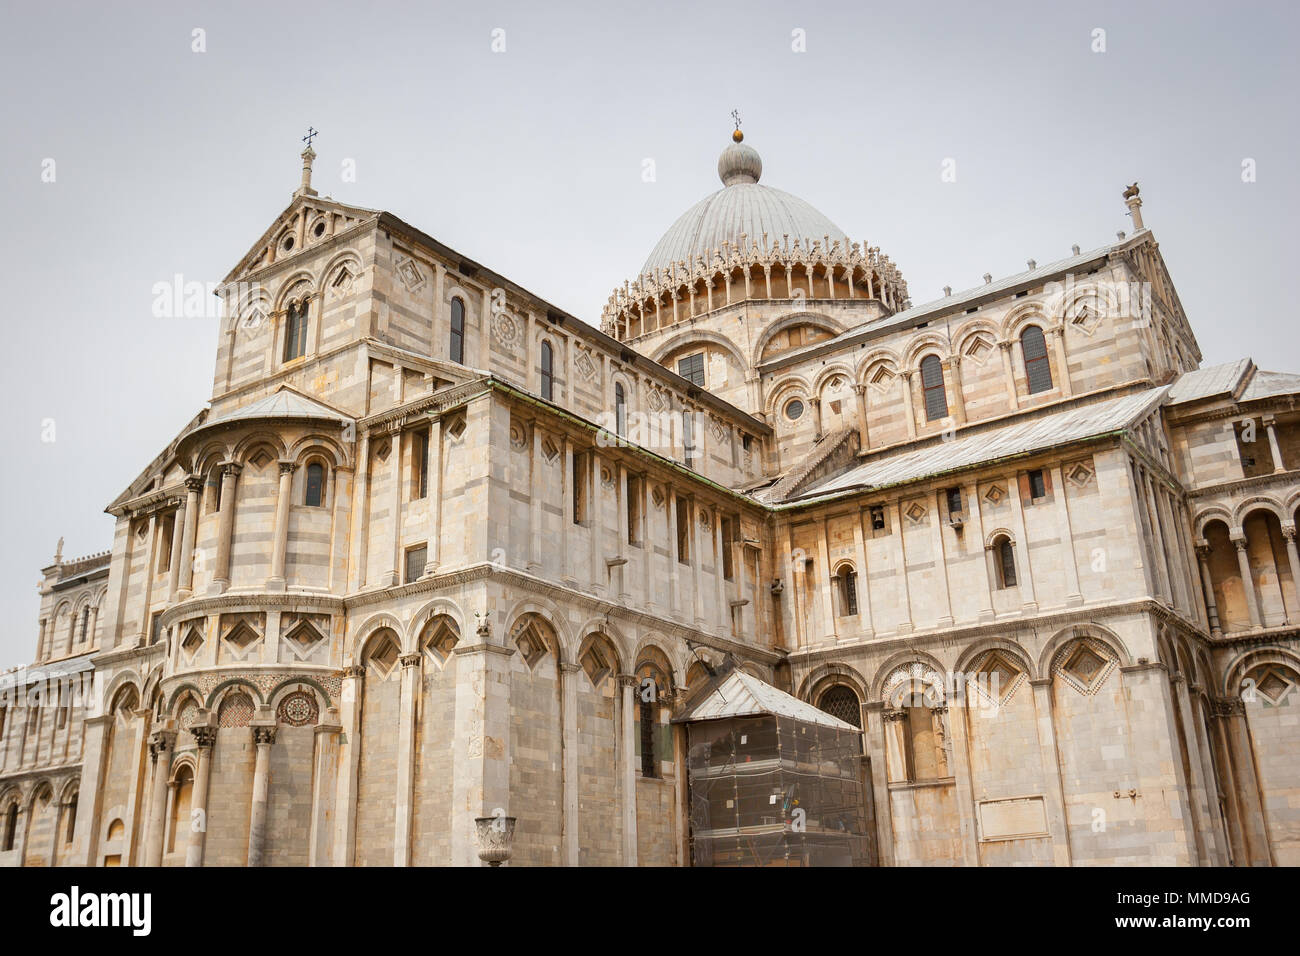 La Catedral de Pisa, la catedral católica romana dedicada a la asunción de la Virgen María en Pisa, Italia. Foto de stock